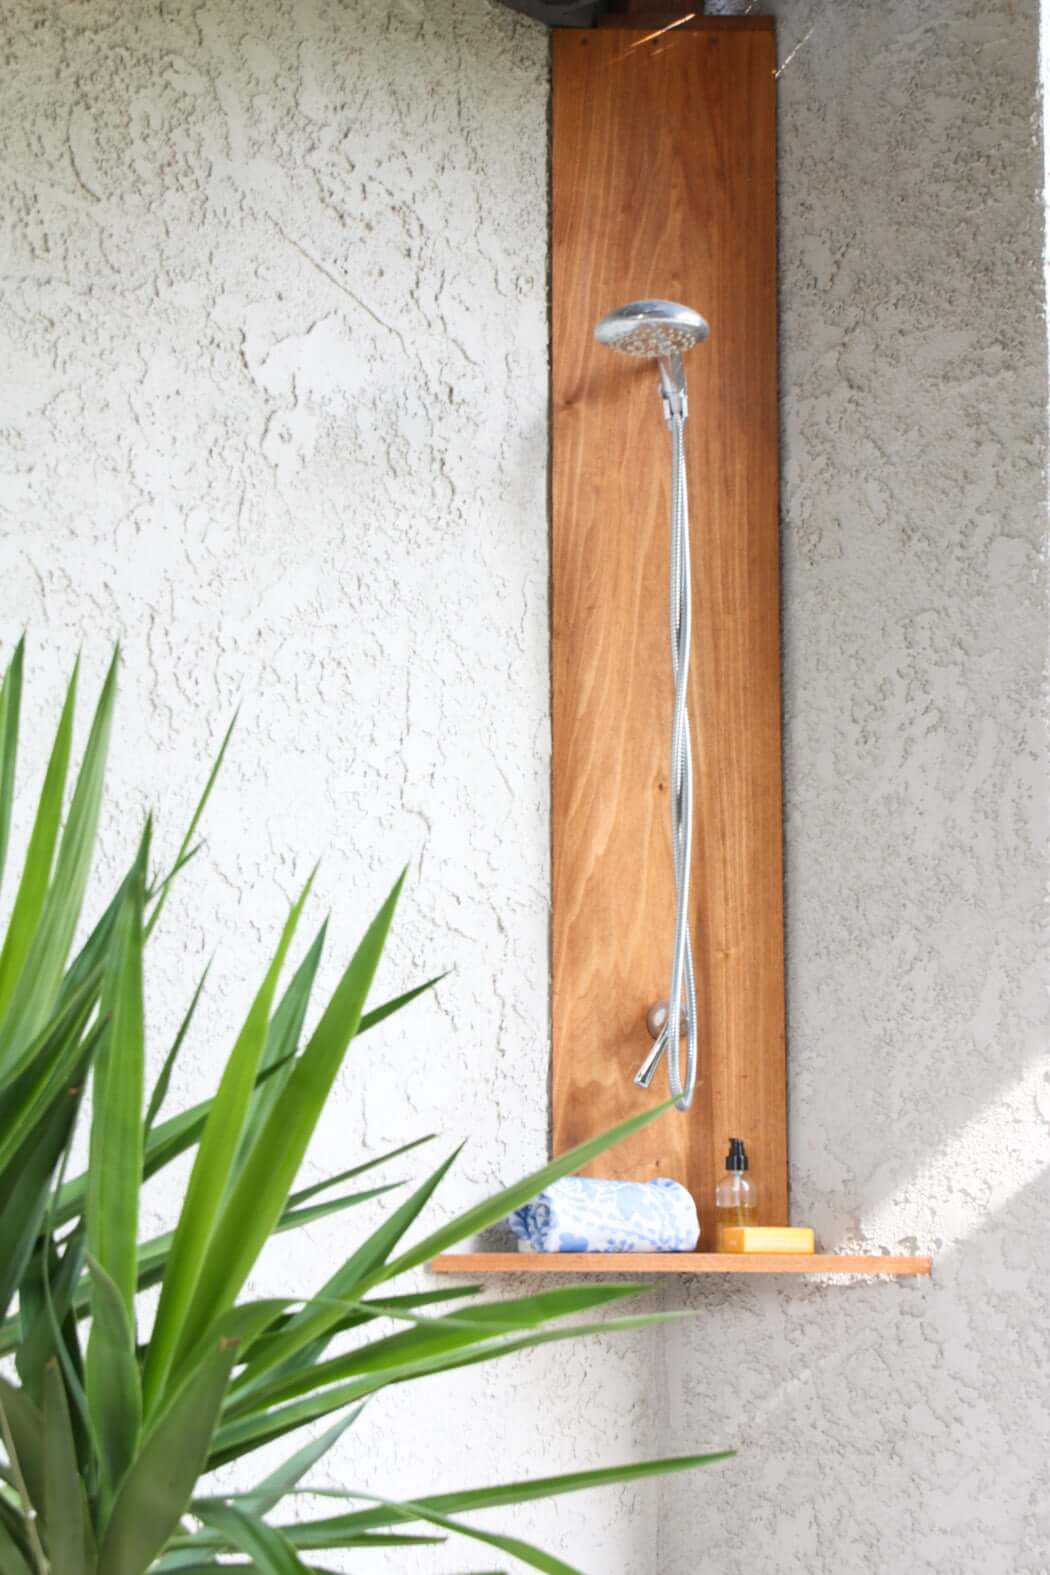 DIY outdoor shower in corner, made of teak and shower fixtures